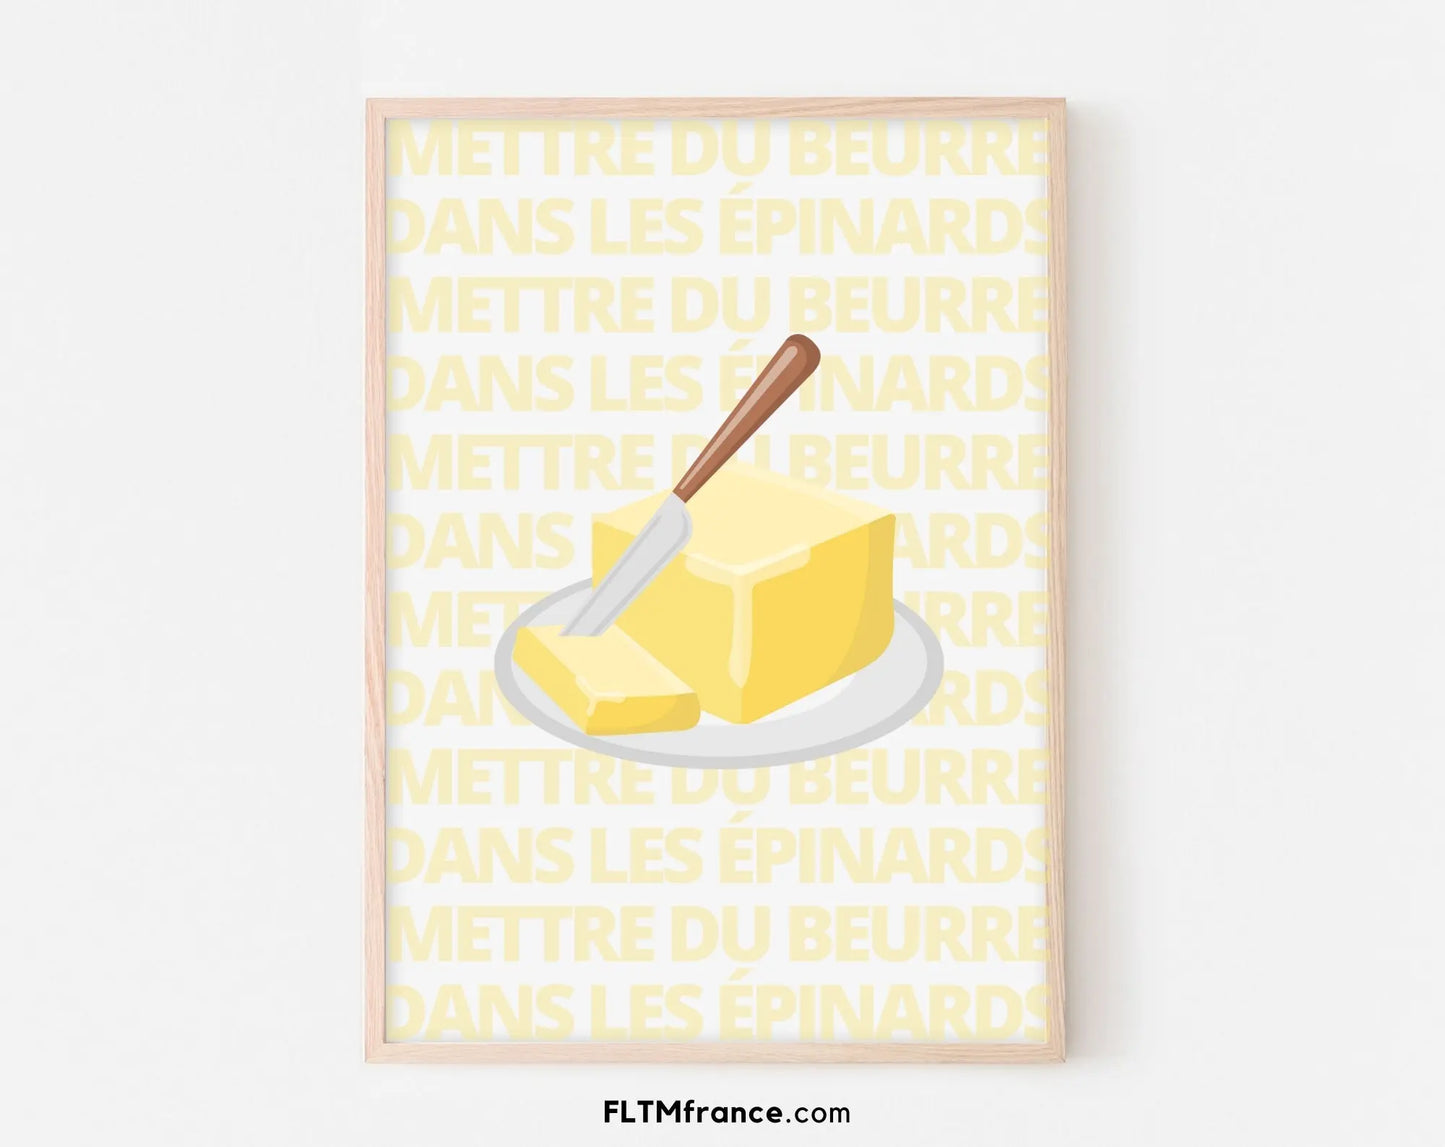 Affiche Mettre du beurre dans les épinards - Expression culinaire Française FLTMfrance